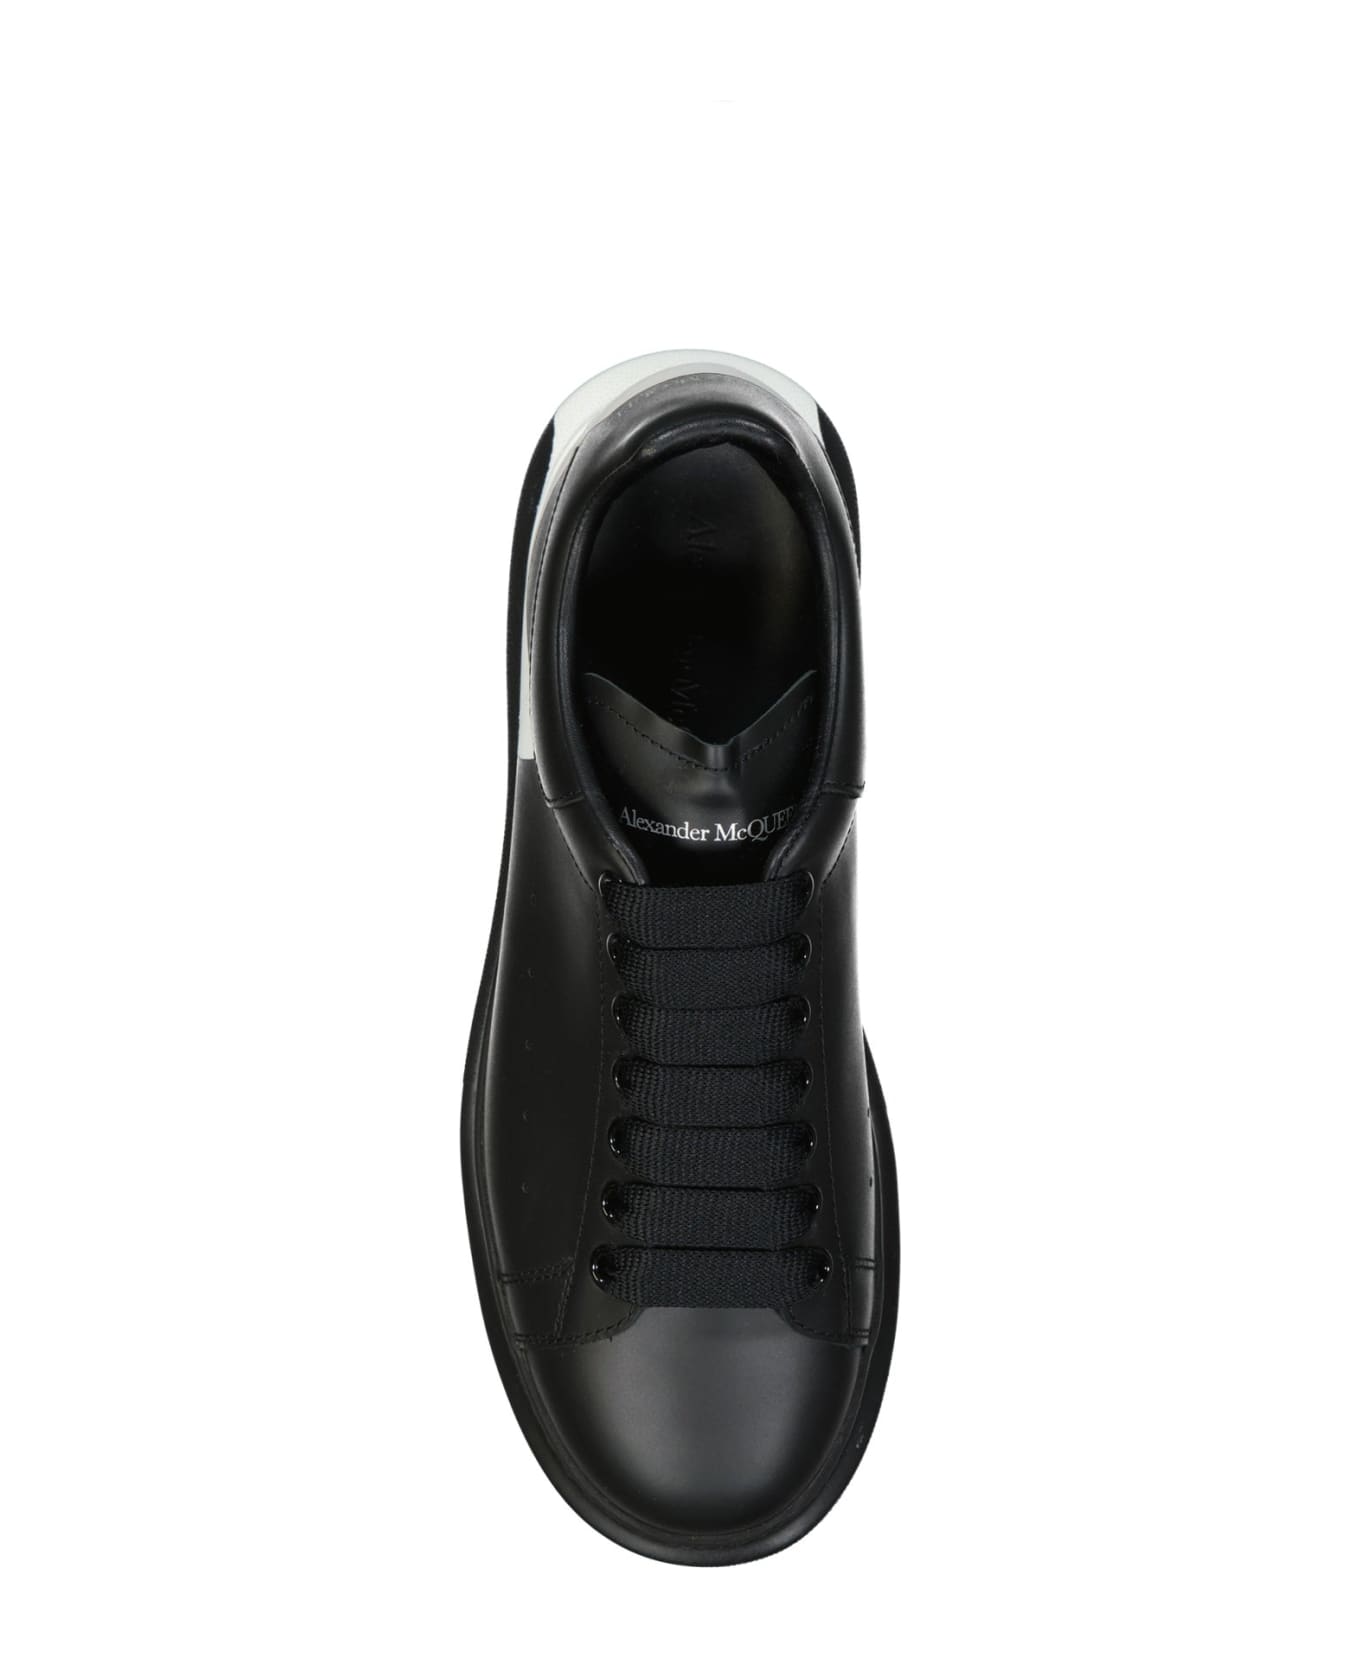 Alexander McQueen Oversized Sneakers - Black スニーカー